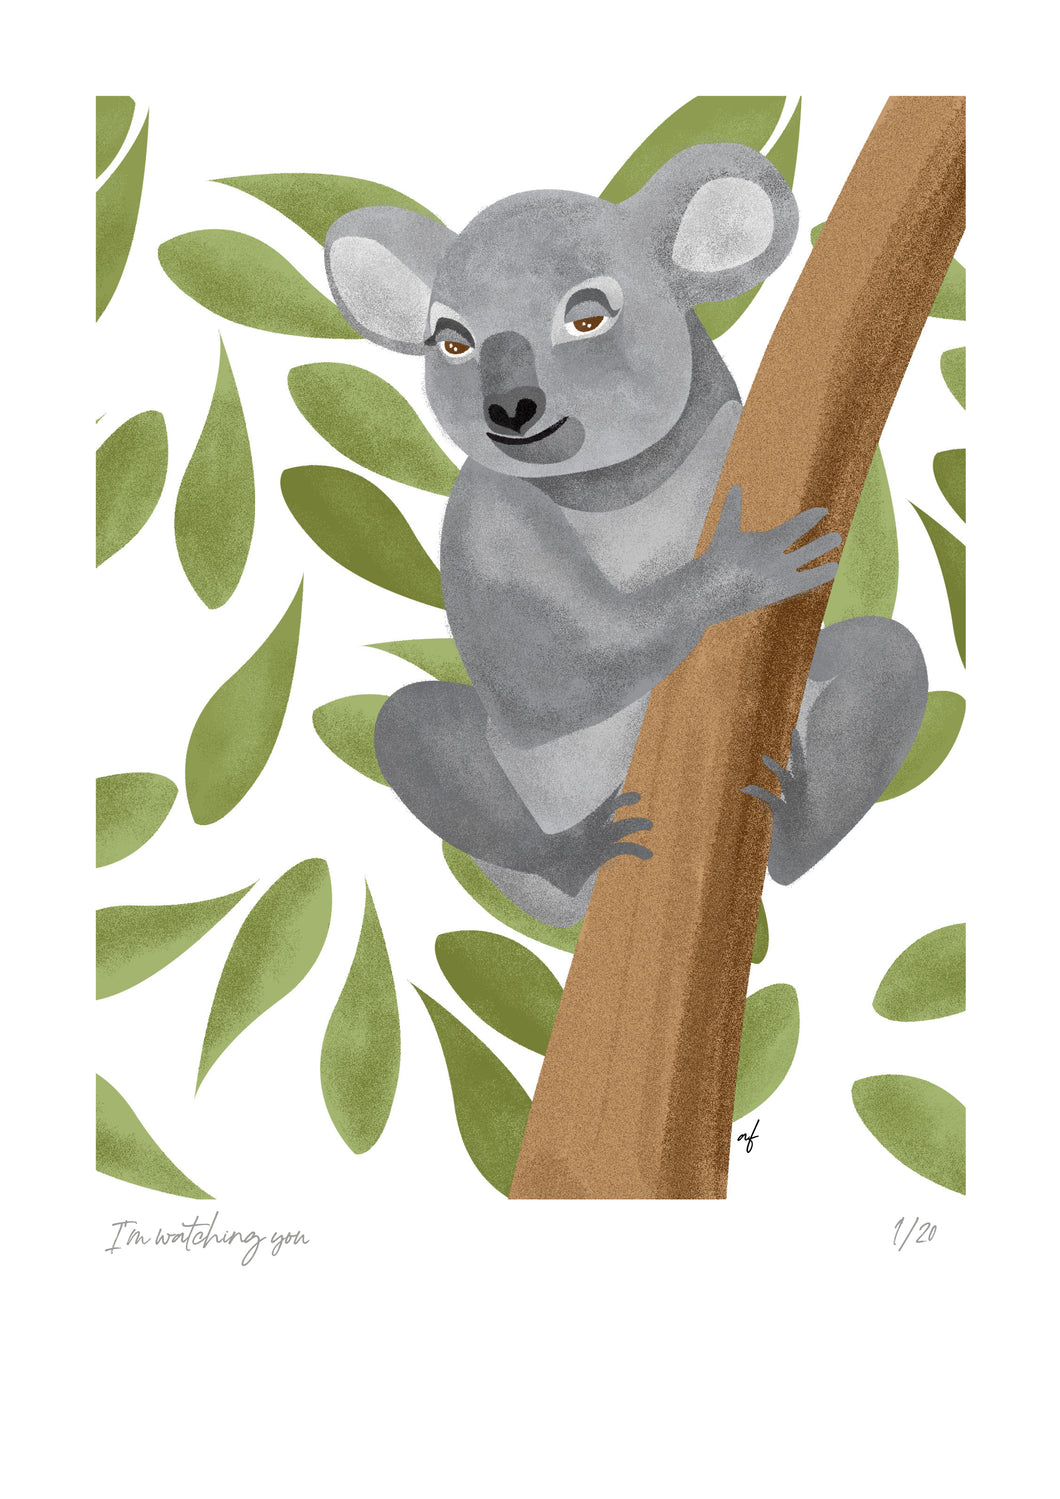 The Koala (watching you)